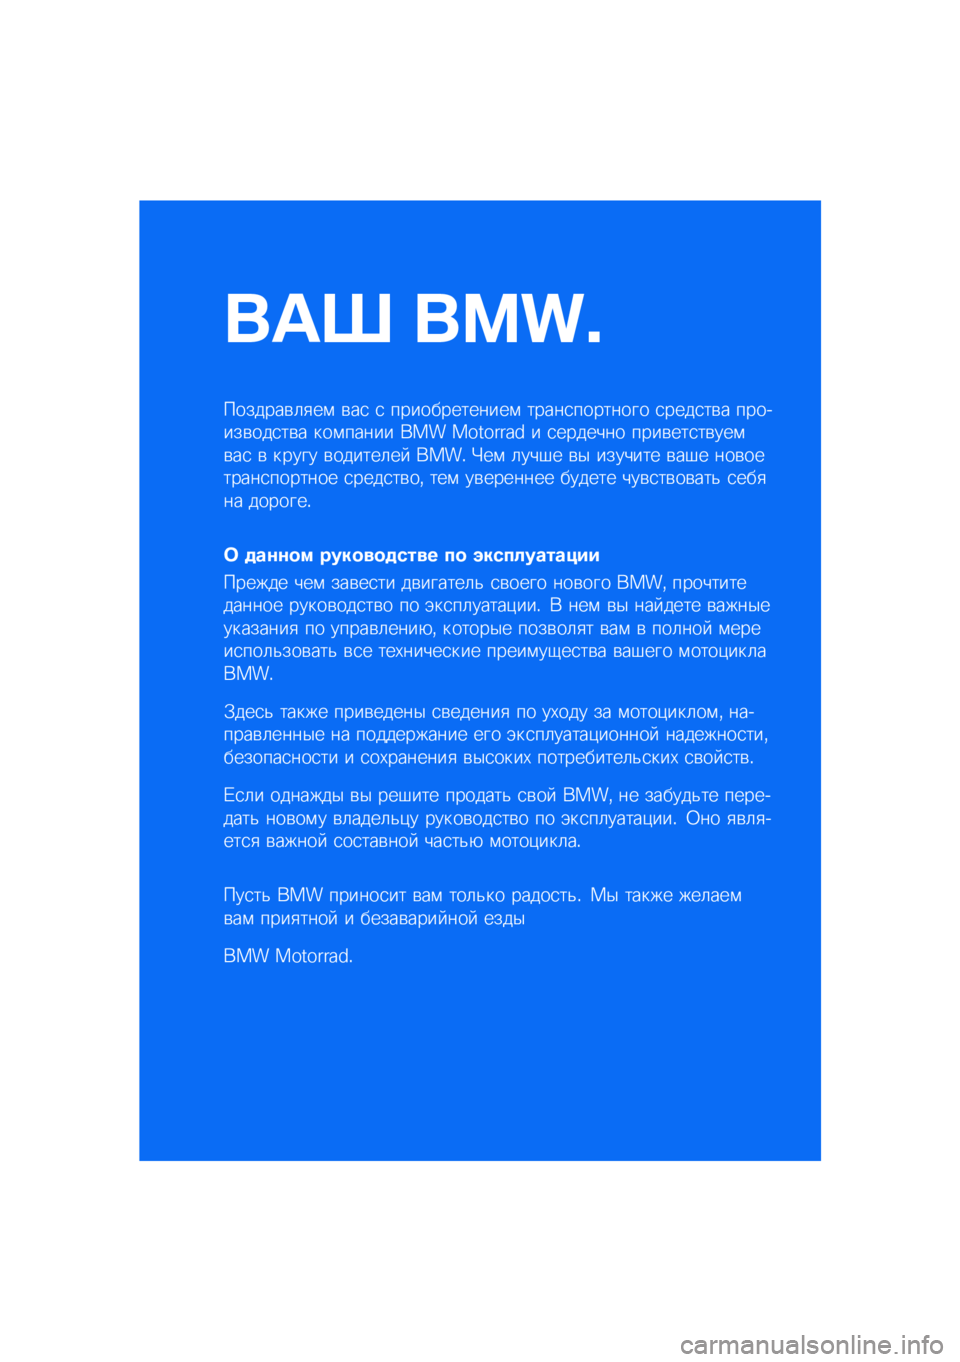 BMW MOTORRAD R 1250 RS 2021  Руководство по эксплуатации (in Russian) ��� ����\b
�������\b�	�
��\f �\b��
 �
 �������������\f �����
�������� �
����
��\b� �������\b���
��\b� ���\f����� ��� �������� � 